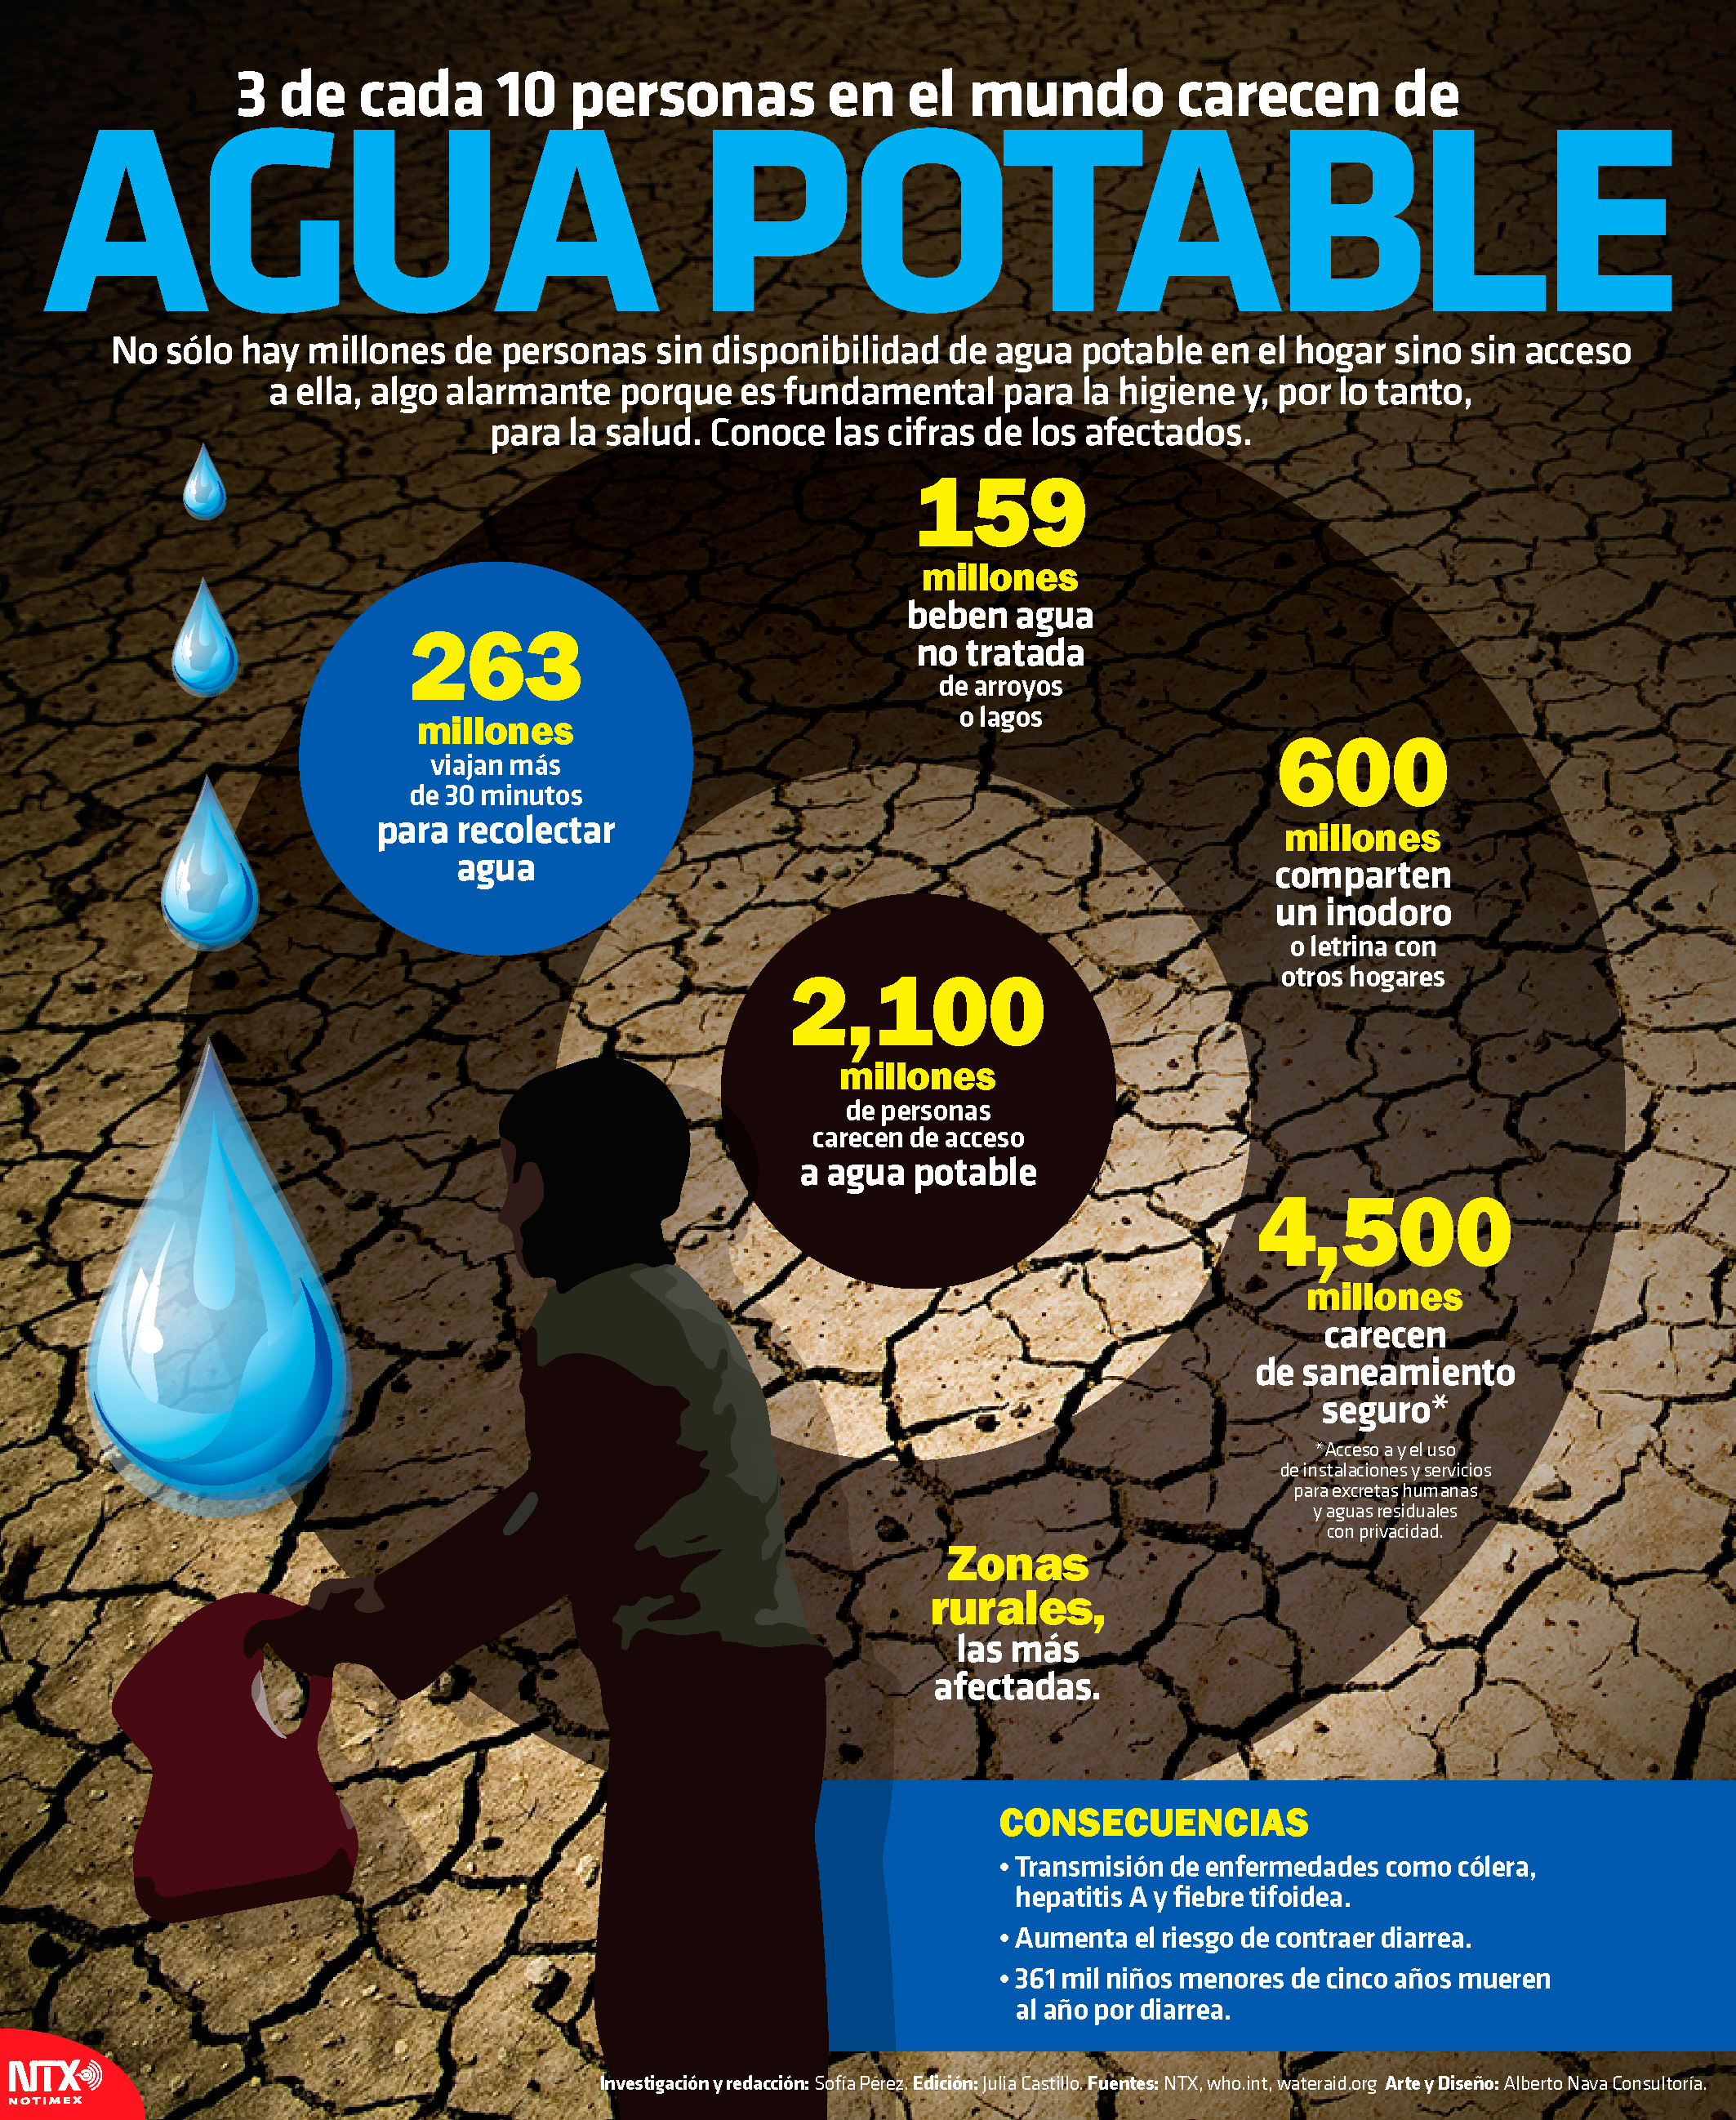 3 de cada 10 personas en el mundo carecen de agua potable 